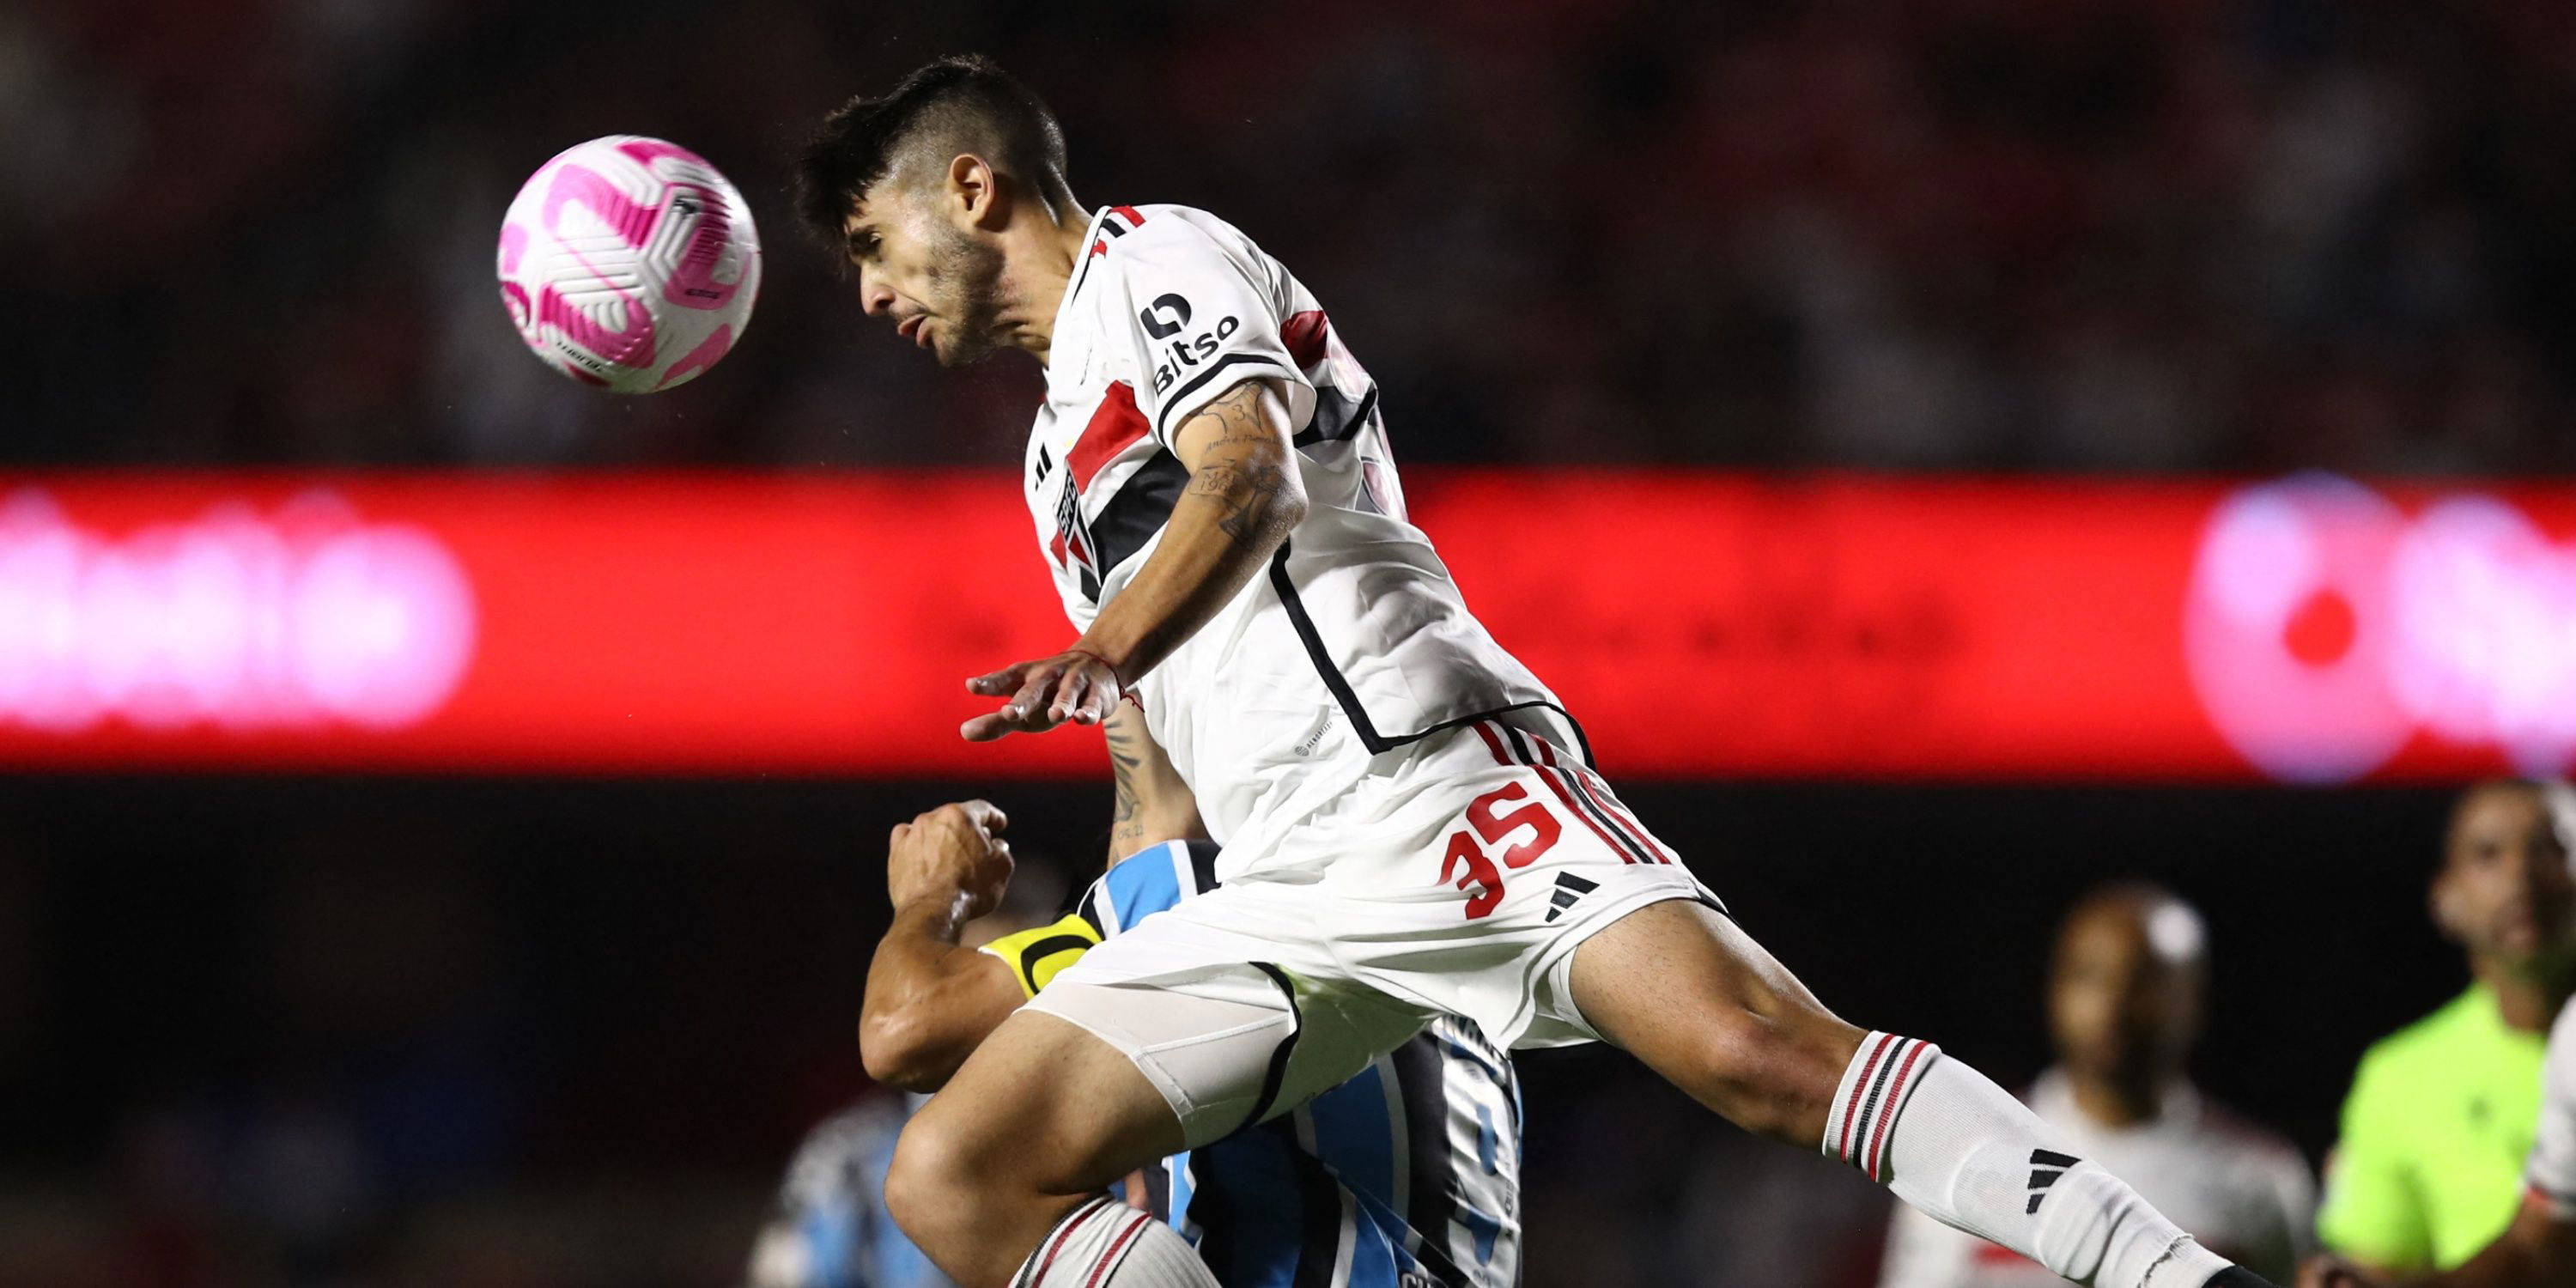 Lucas Beraldo to Leicester: Sao Paulo make decision on January transfer